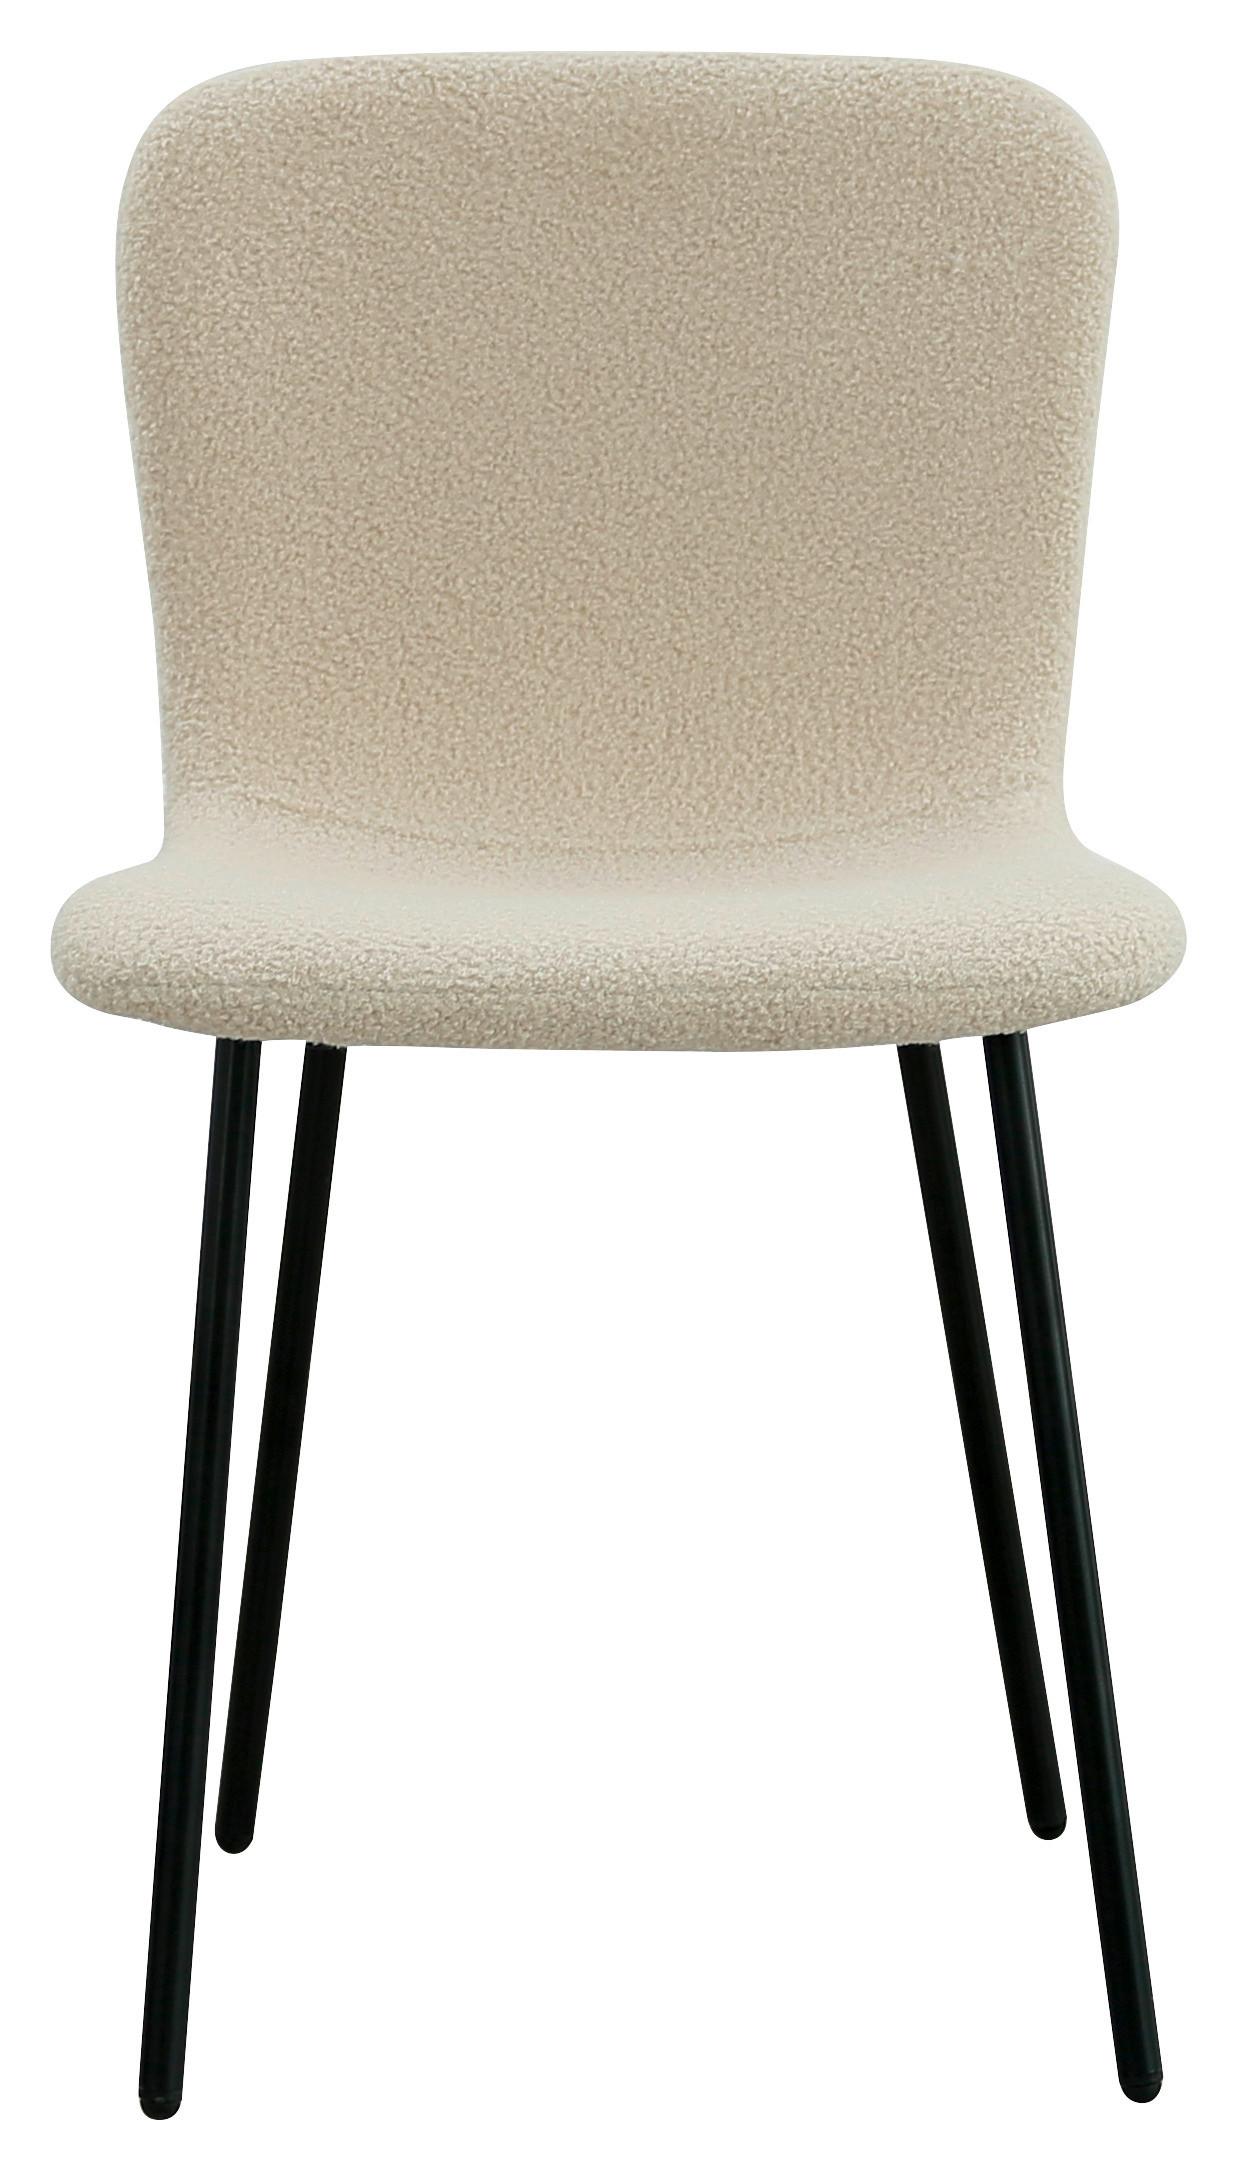 Stuhl in Beige/Schwarz - Beige/Schwarz, Design, Textil/Metall (44/79/51cm) - Modern Living